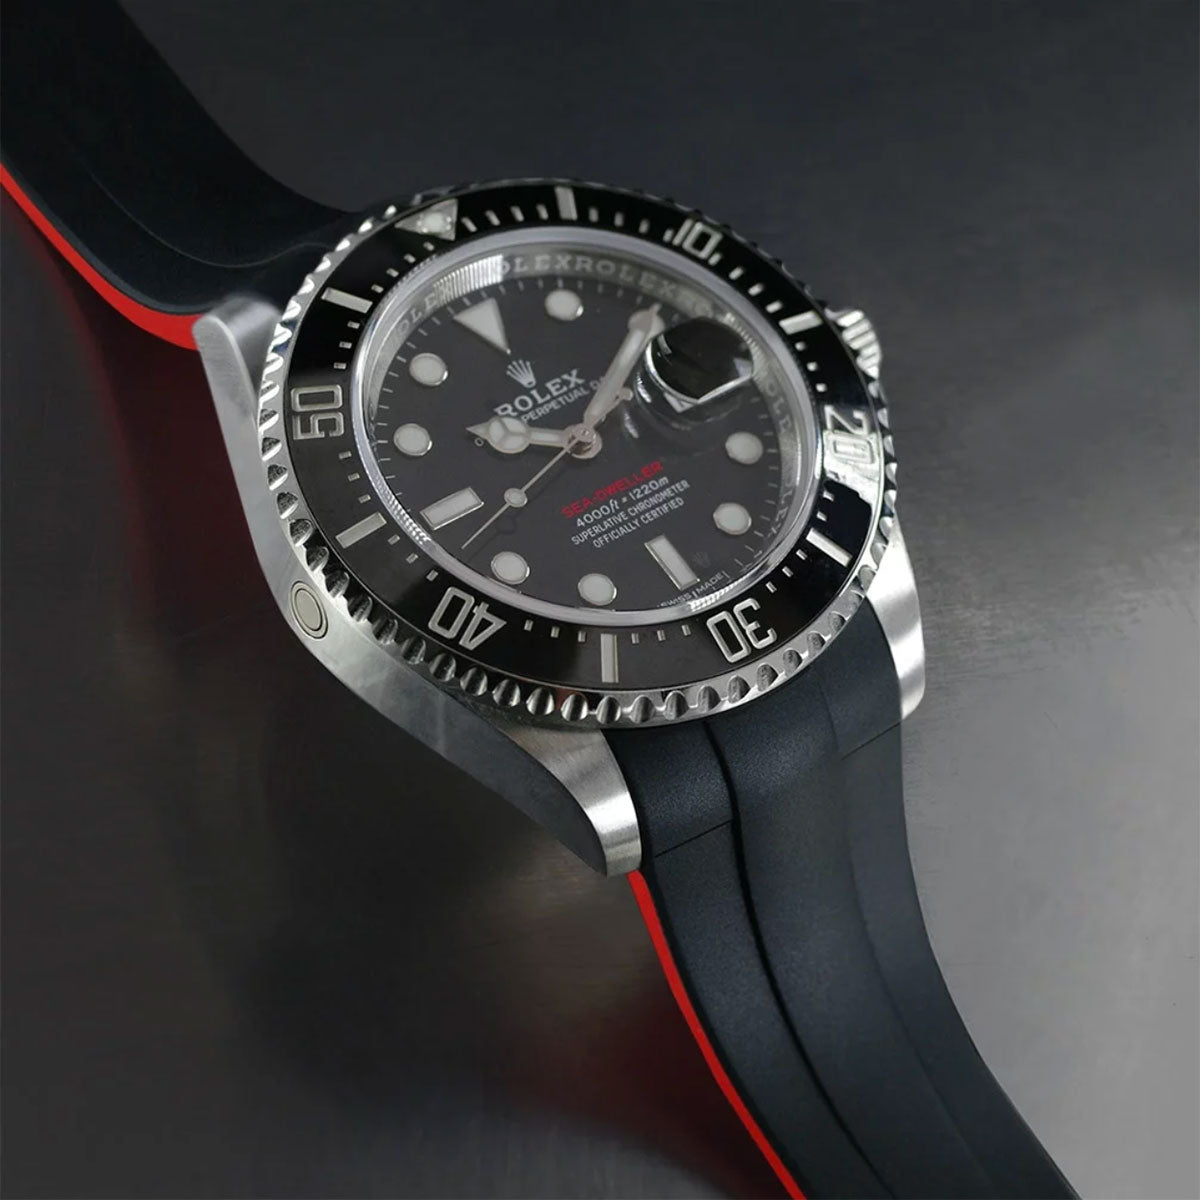 Rolex - Rubber B - Bracelet caoutchouc pour Sea-Dweller 43mm - Série Glidelock ref. 126600 - watch band leather strap - ABP Concept -